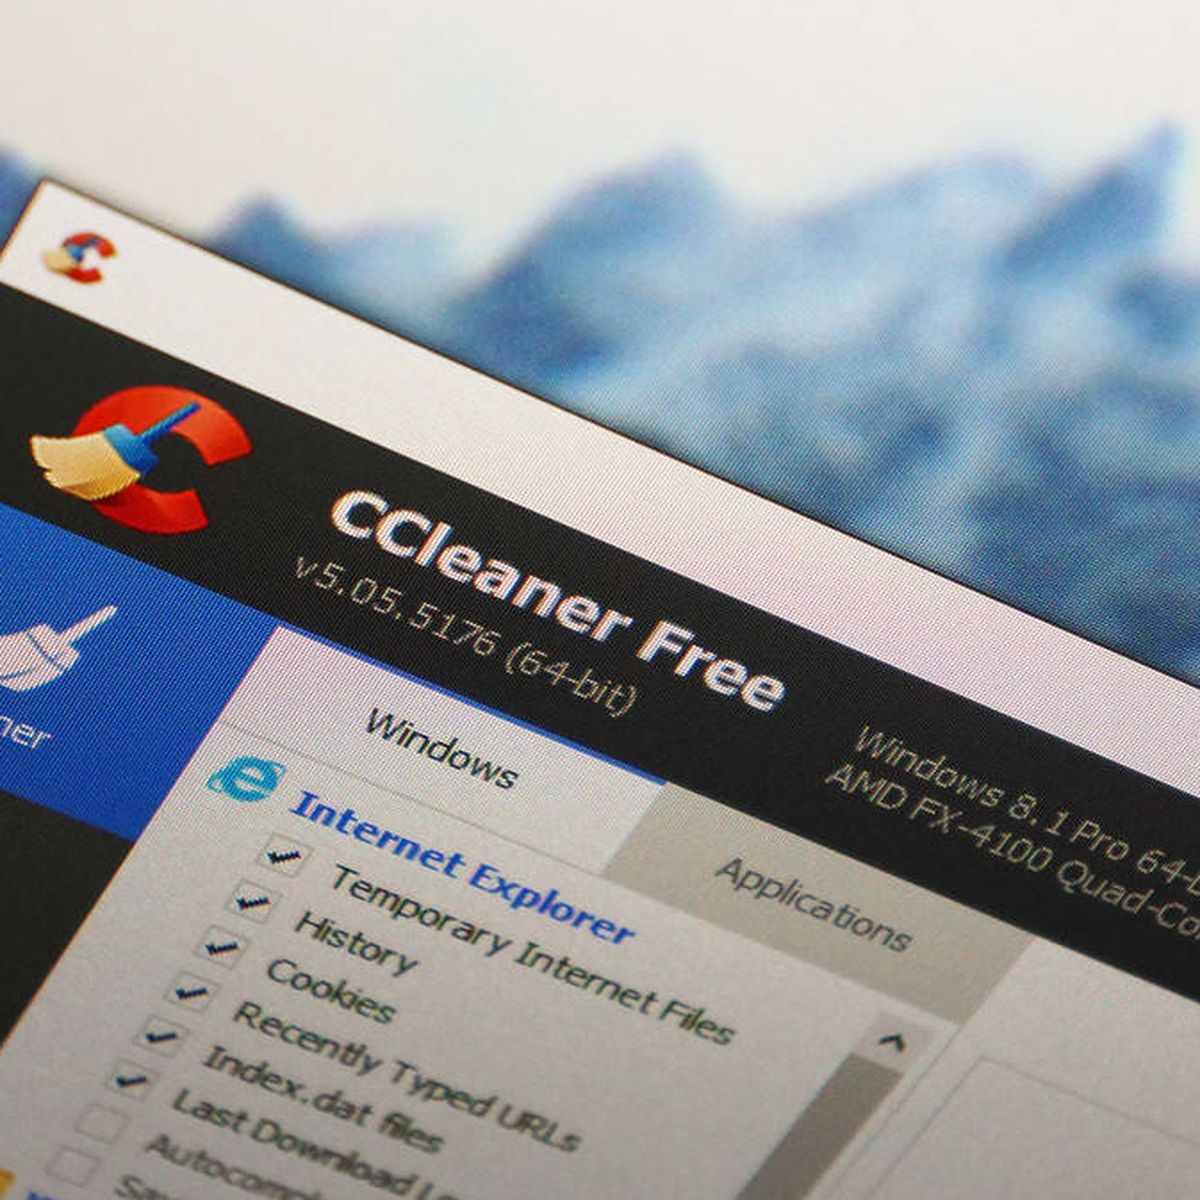 Mejores programas para limpiar el PC y optimizar - CCleaner y más